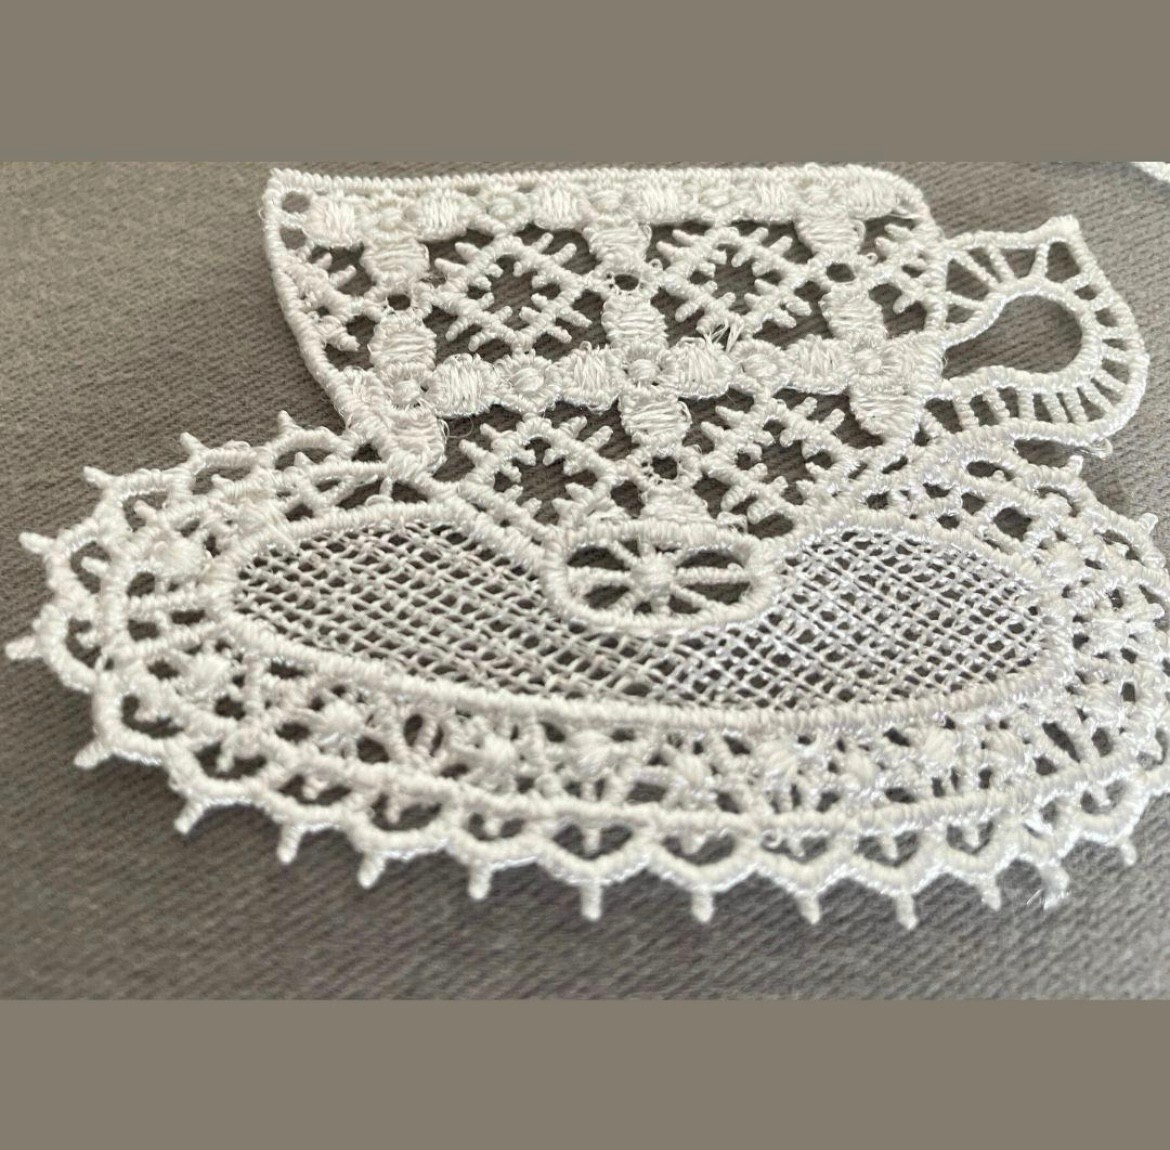 レース 編み アップリケ ティー ポット カップ 装飾 裁縫 モチーフ ホワイト